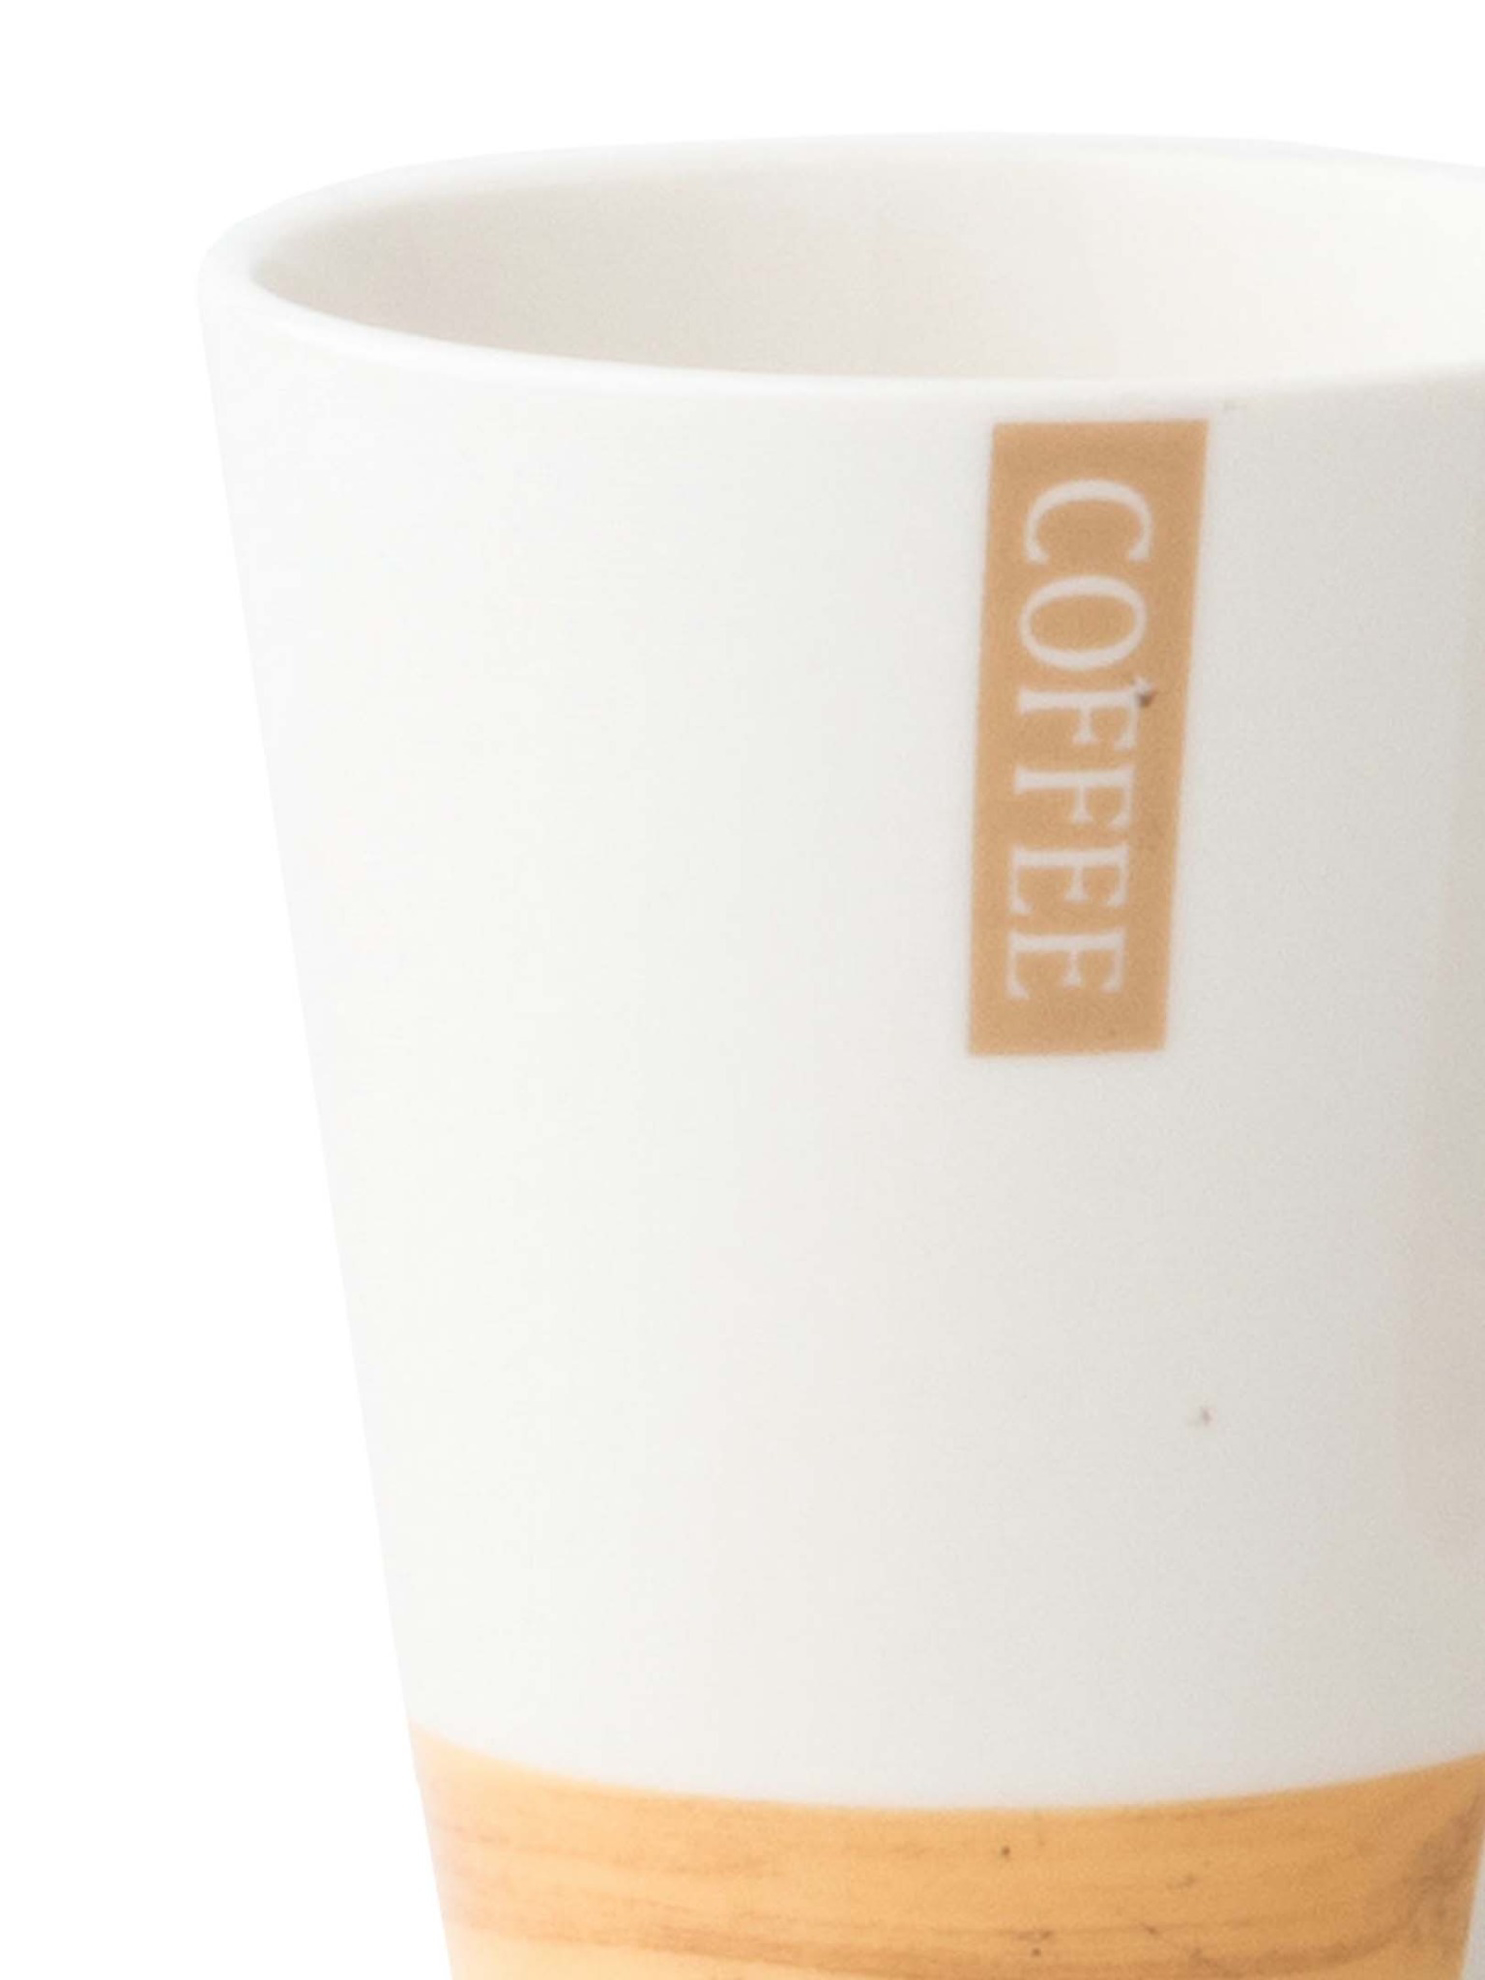 Cốc sứ tráng men trắng nâu họa tiết hình khối chữ COFFEE 310ml